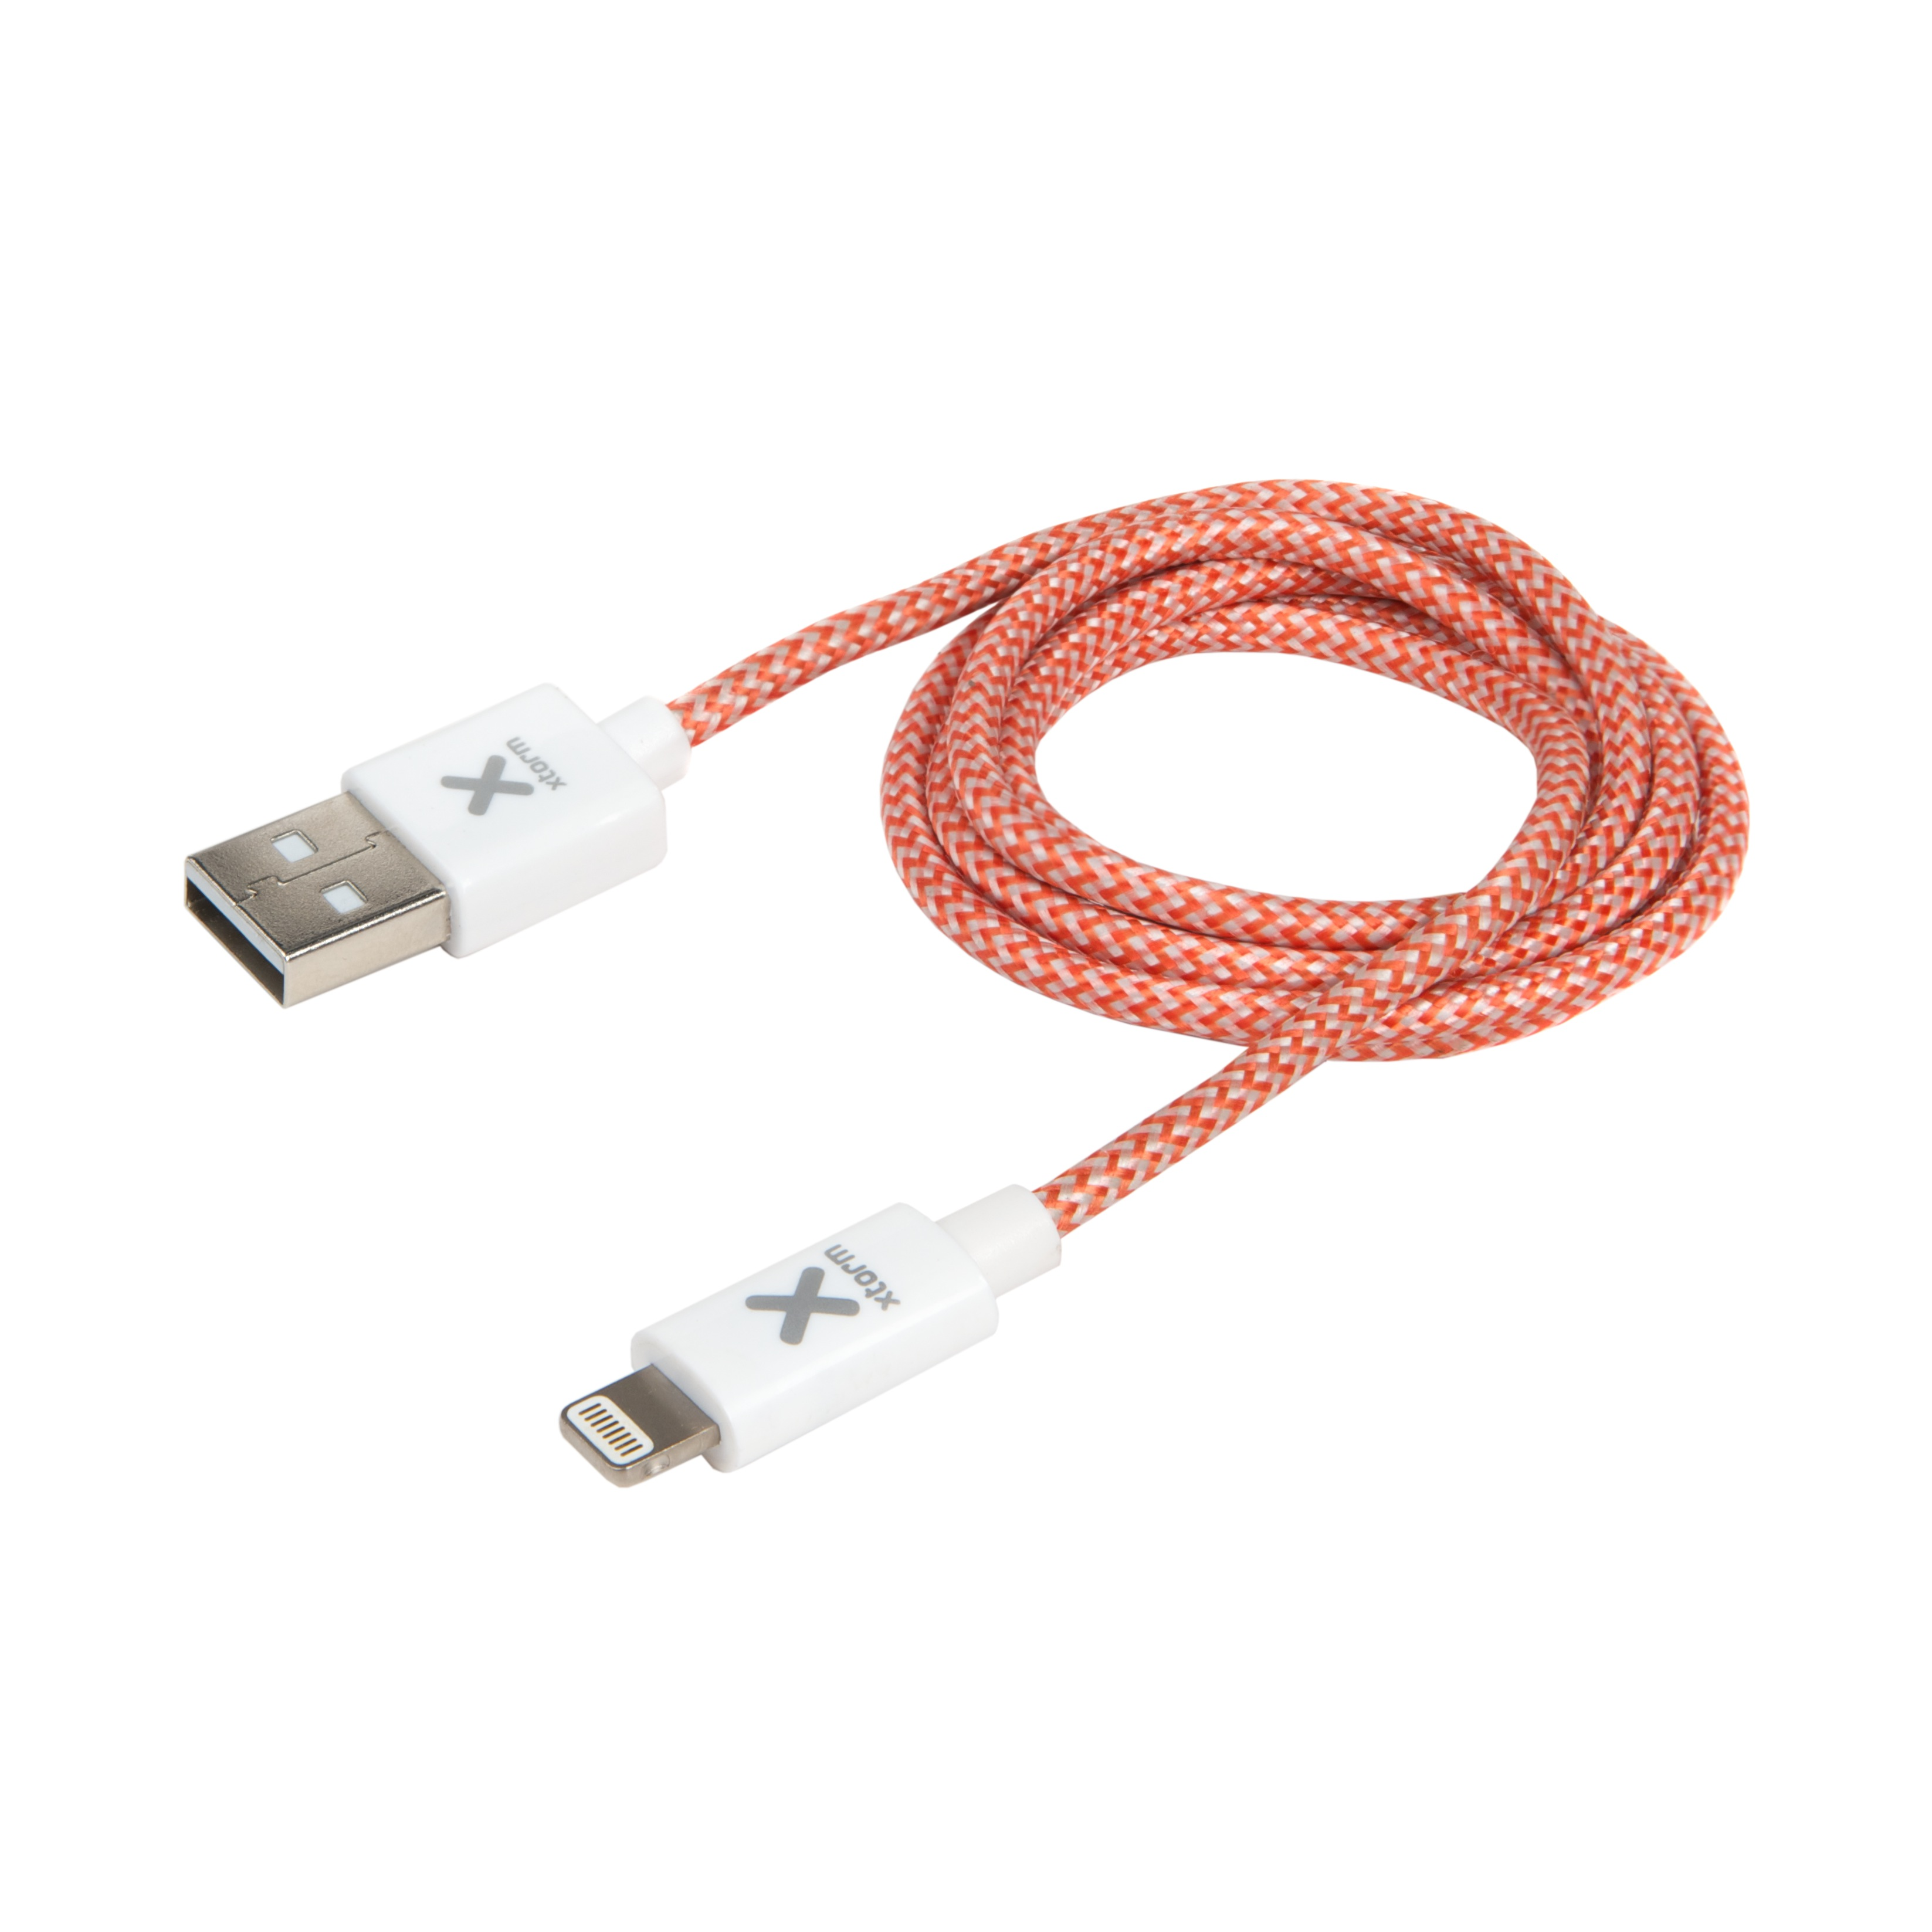 Cable USB XTORM Kabel Series Original